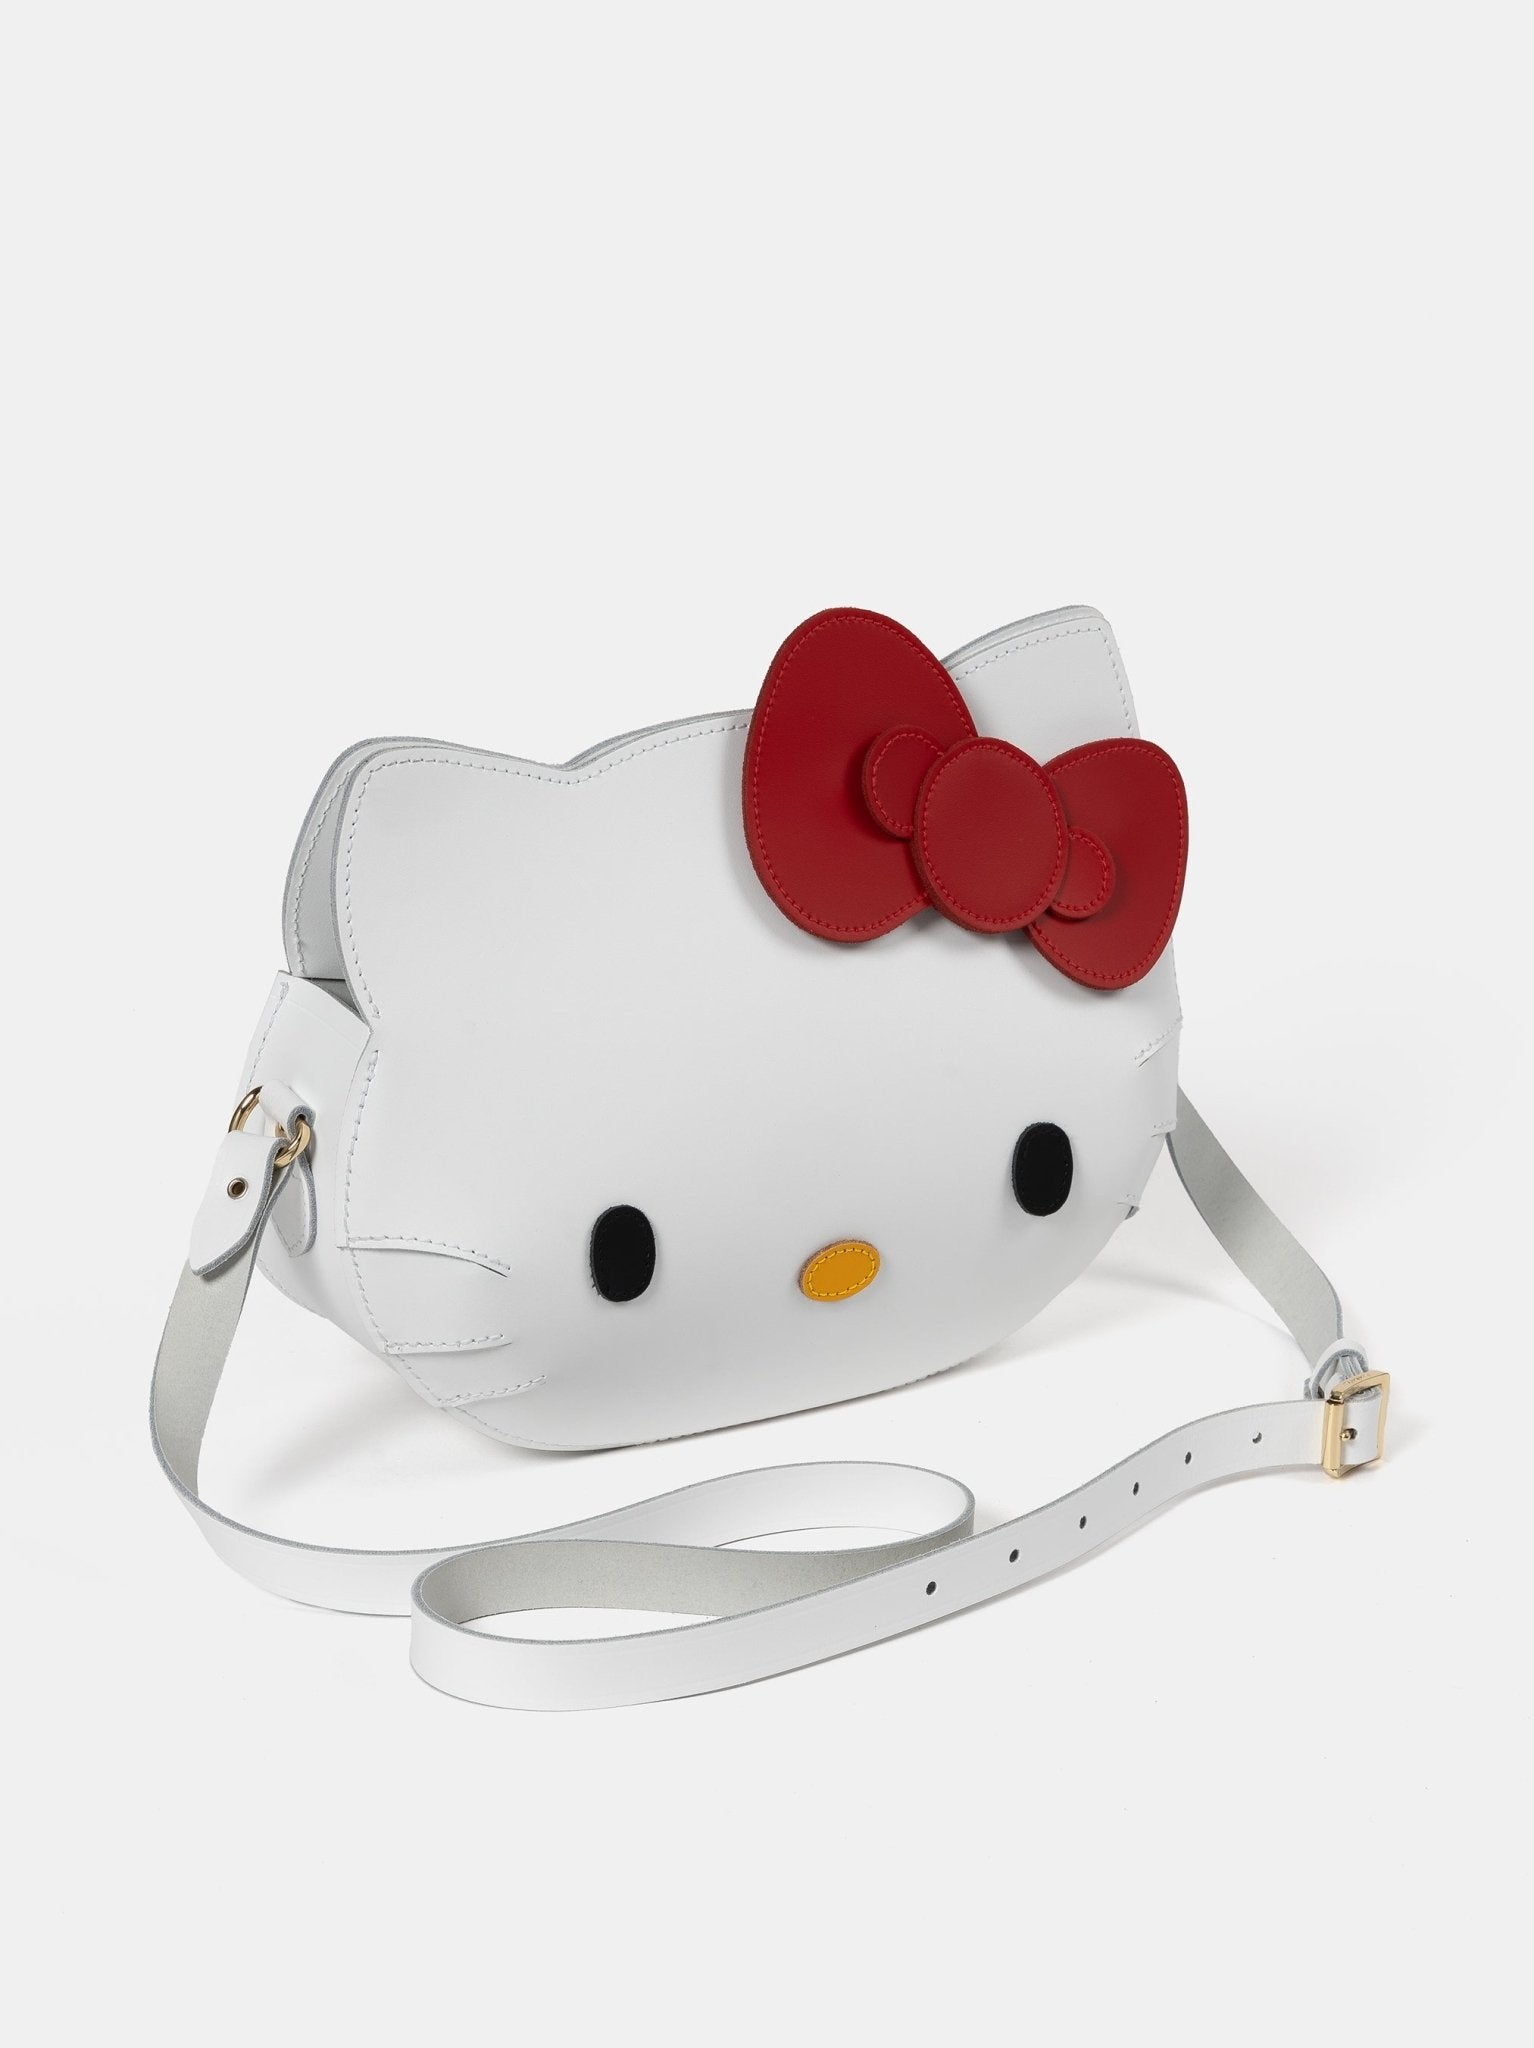 The Hello Kitty Face Bag